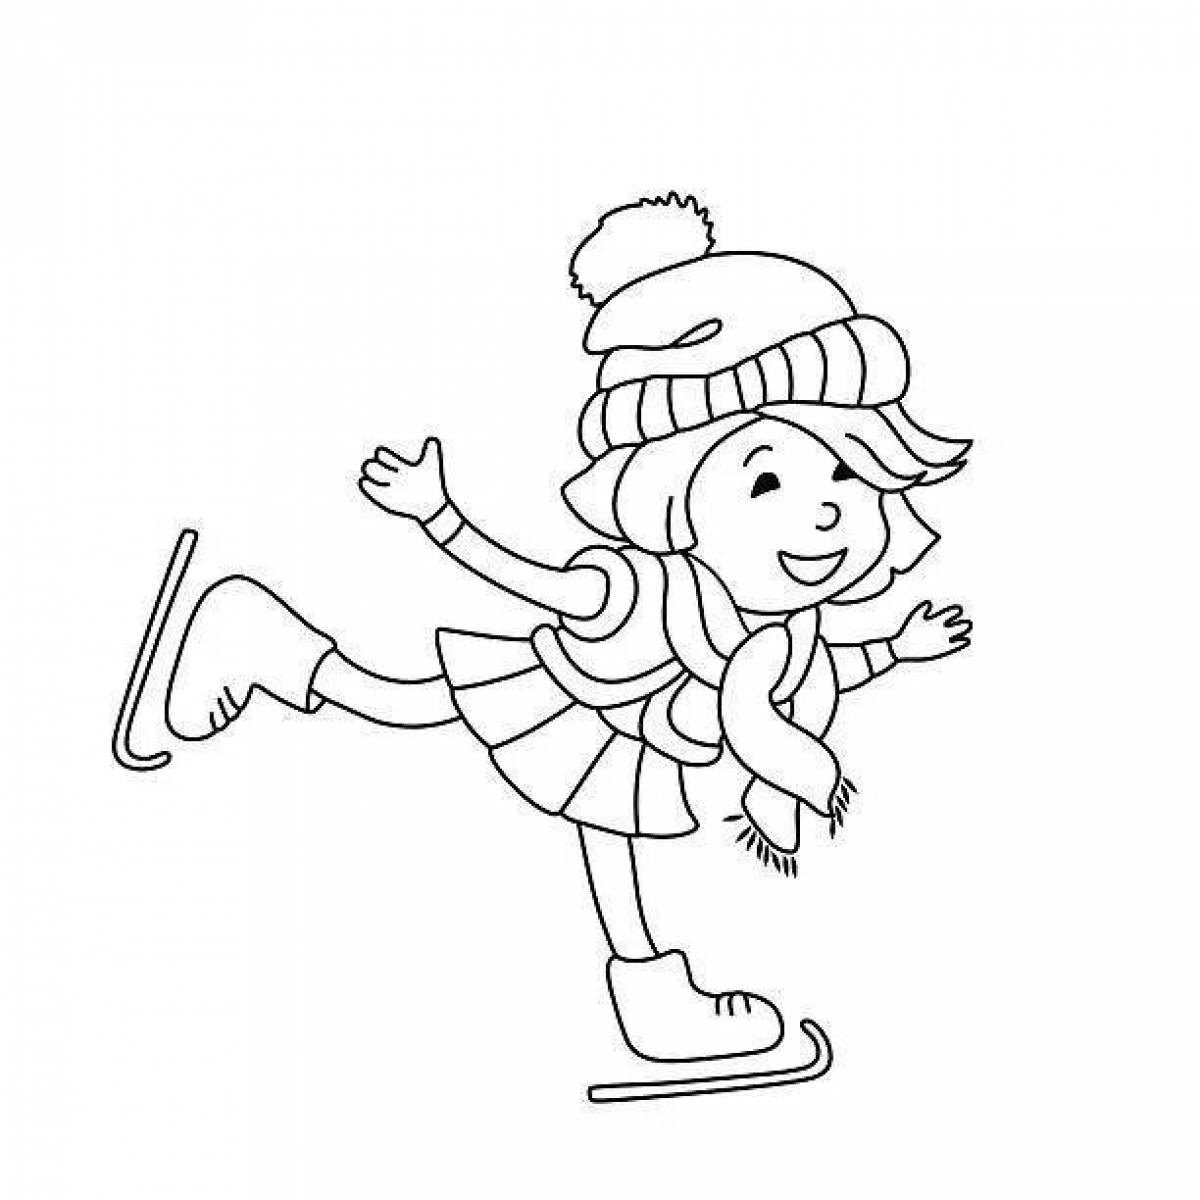 Radiant girl on skates